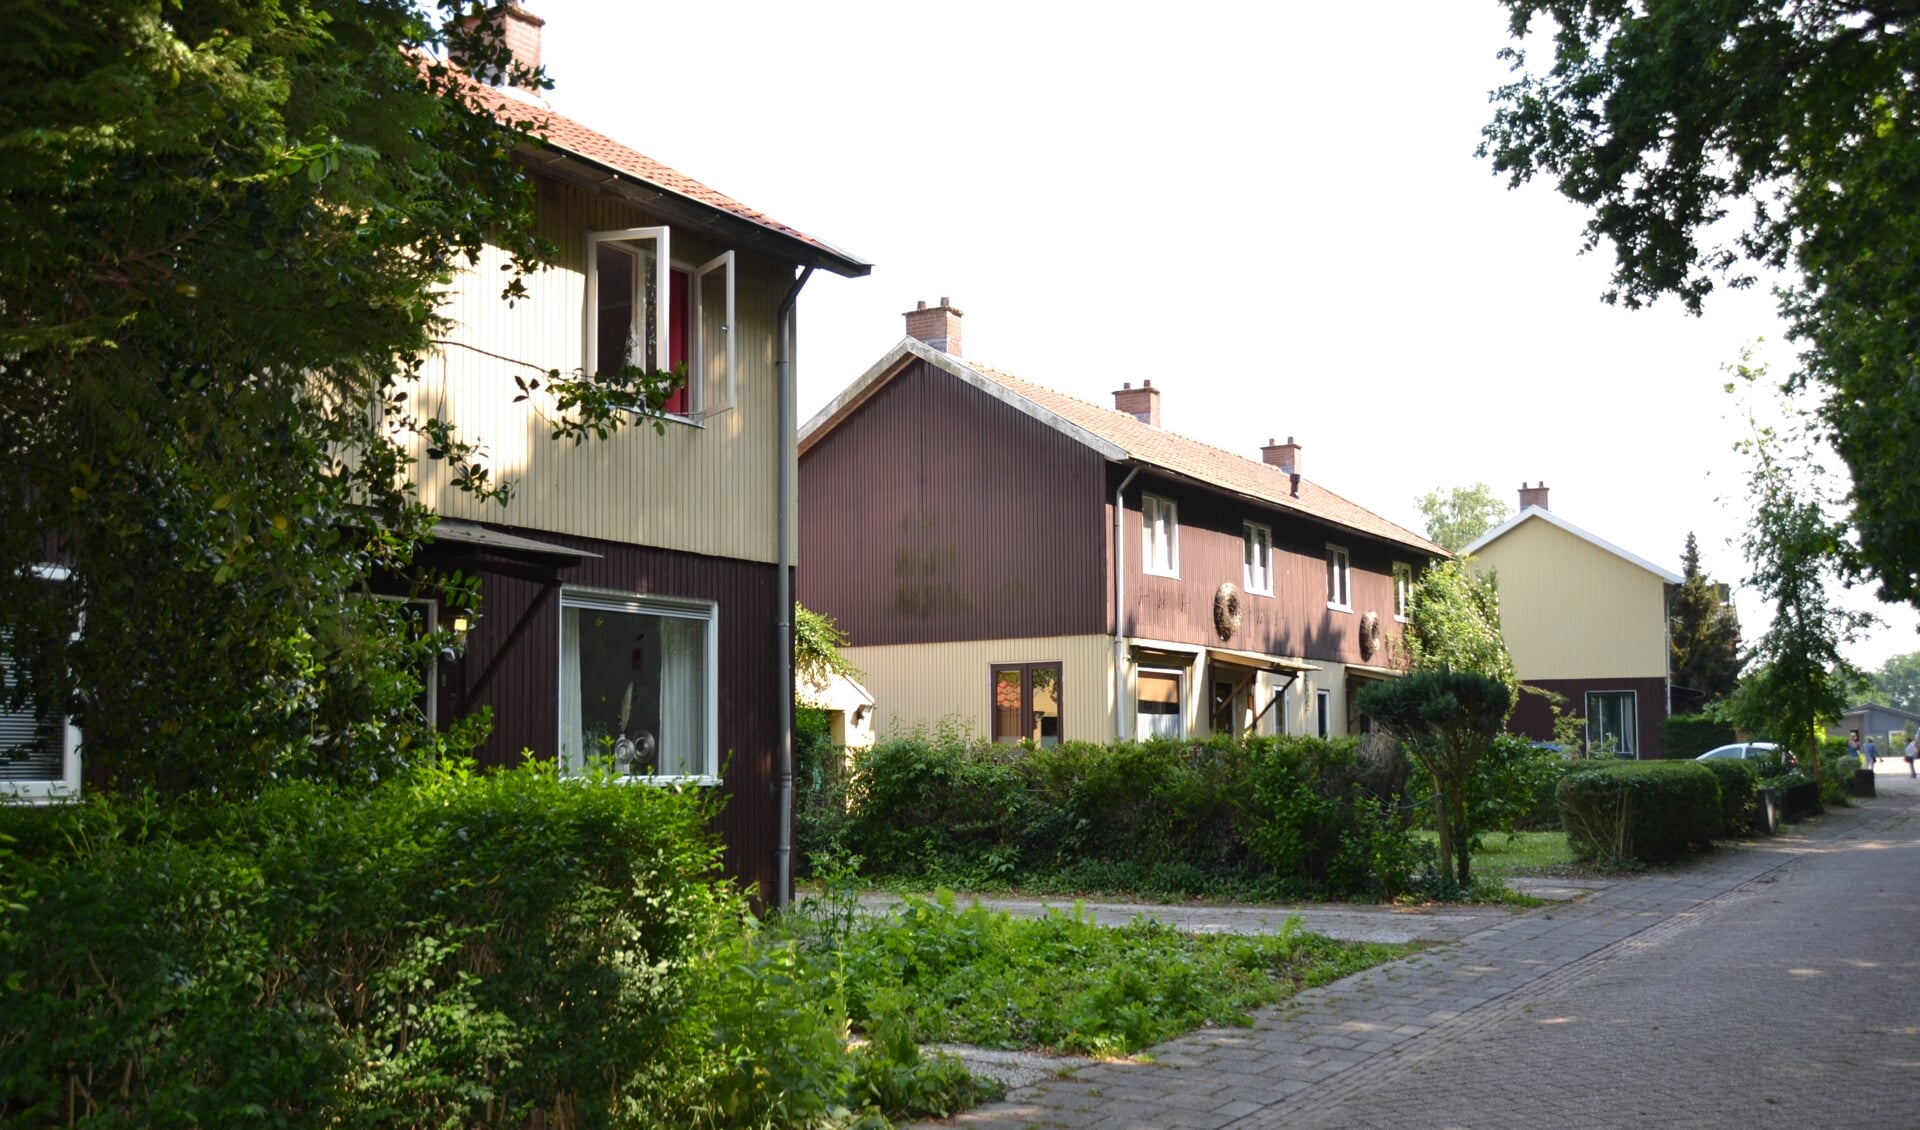 De woningen aan de Zweedsestraat die gebouwd zijn na de Watersnoodramp in 1953.